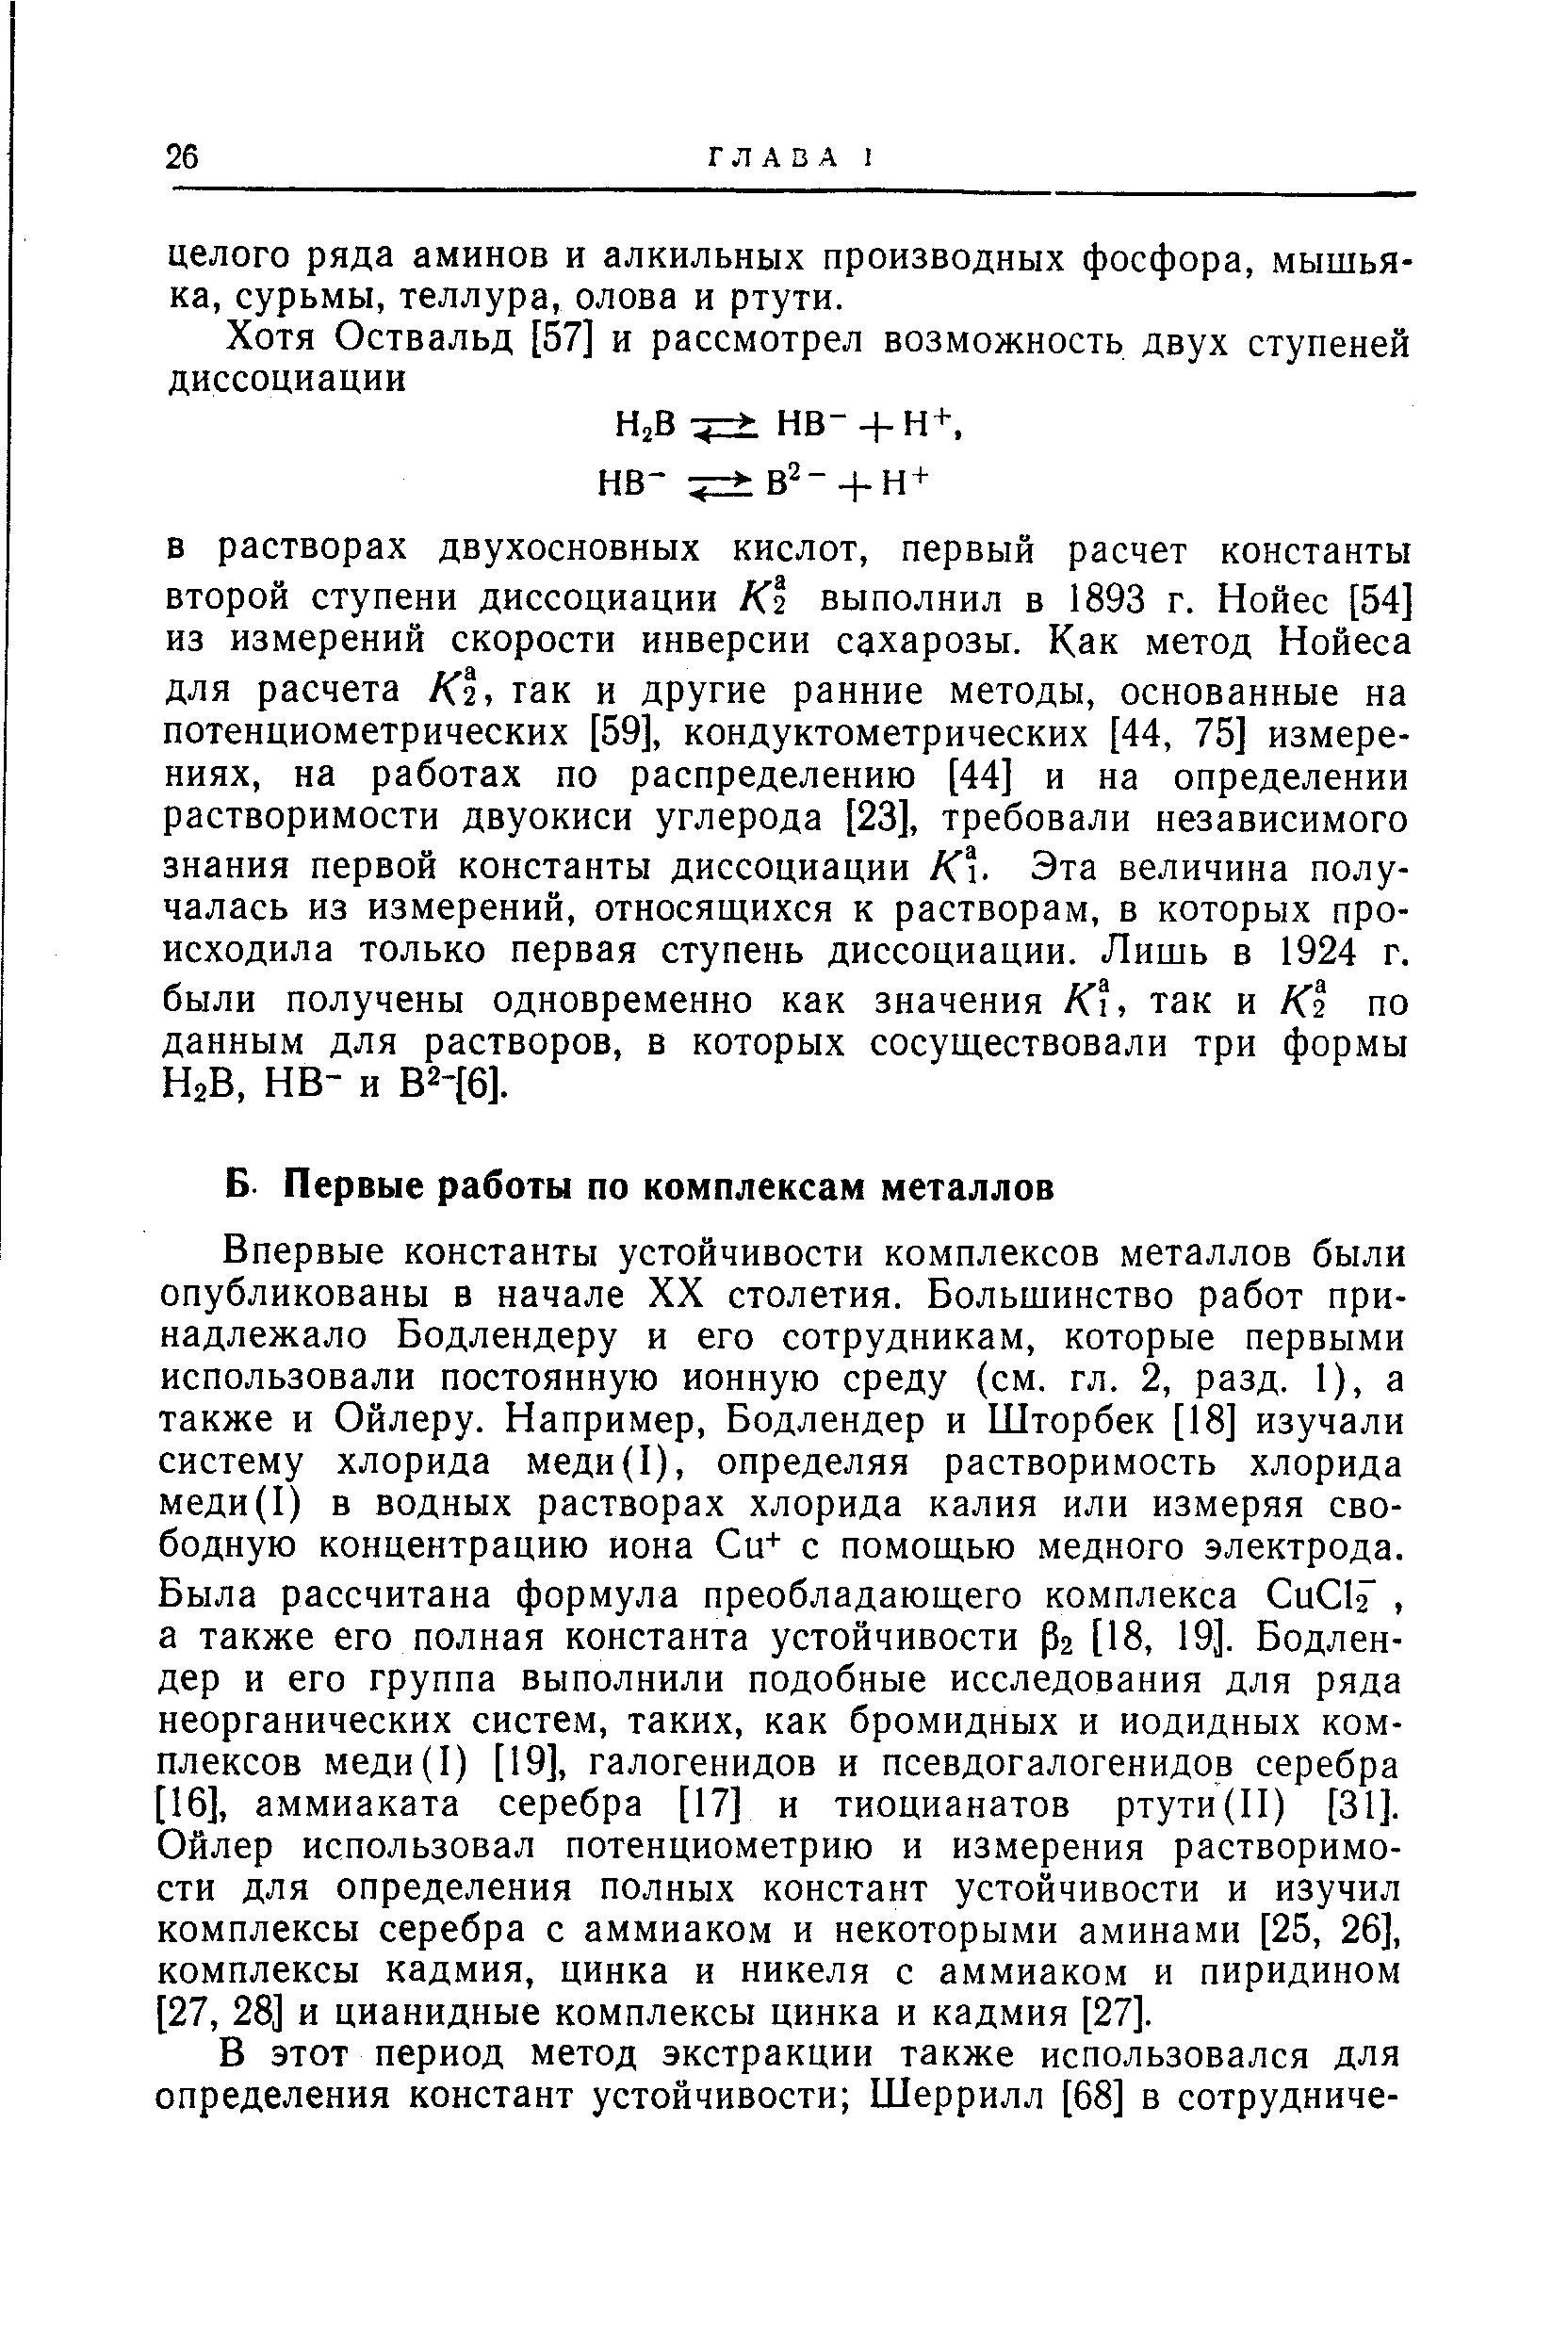 В растворах двухосновных кислот, первый расчет константы второй ступени диссоциации К2 выполнил в 1893 г. Нойес [54] из измерений скорости инверсии сахарозы. Как метод Нойеса для расчета К1, гак и другие ранние методы, основанные на потенциометрических [59], кондуктометрических [44, 75] измерениях, на работах по распределению [44] и на определении растворимости двуокиси углерода [23], требовали независимого знания первой константы диссоциации К. Эта величина получалась из измерений, относящихся к растворам, в которых происходила только первая ступень диссоциации. Лишь в 1924 г. были получены одновременно как значения К, так и К1 по данным для растворов, в которых сосуществовали три формы НгВ, не- и В2-[6].